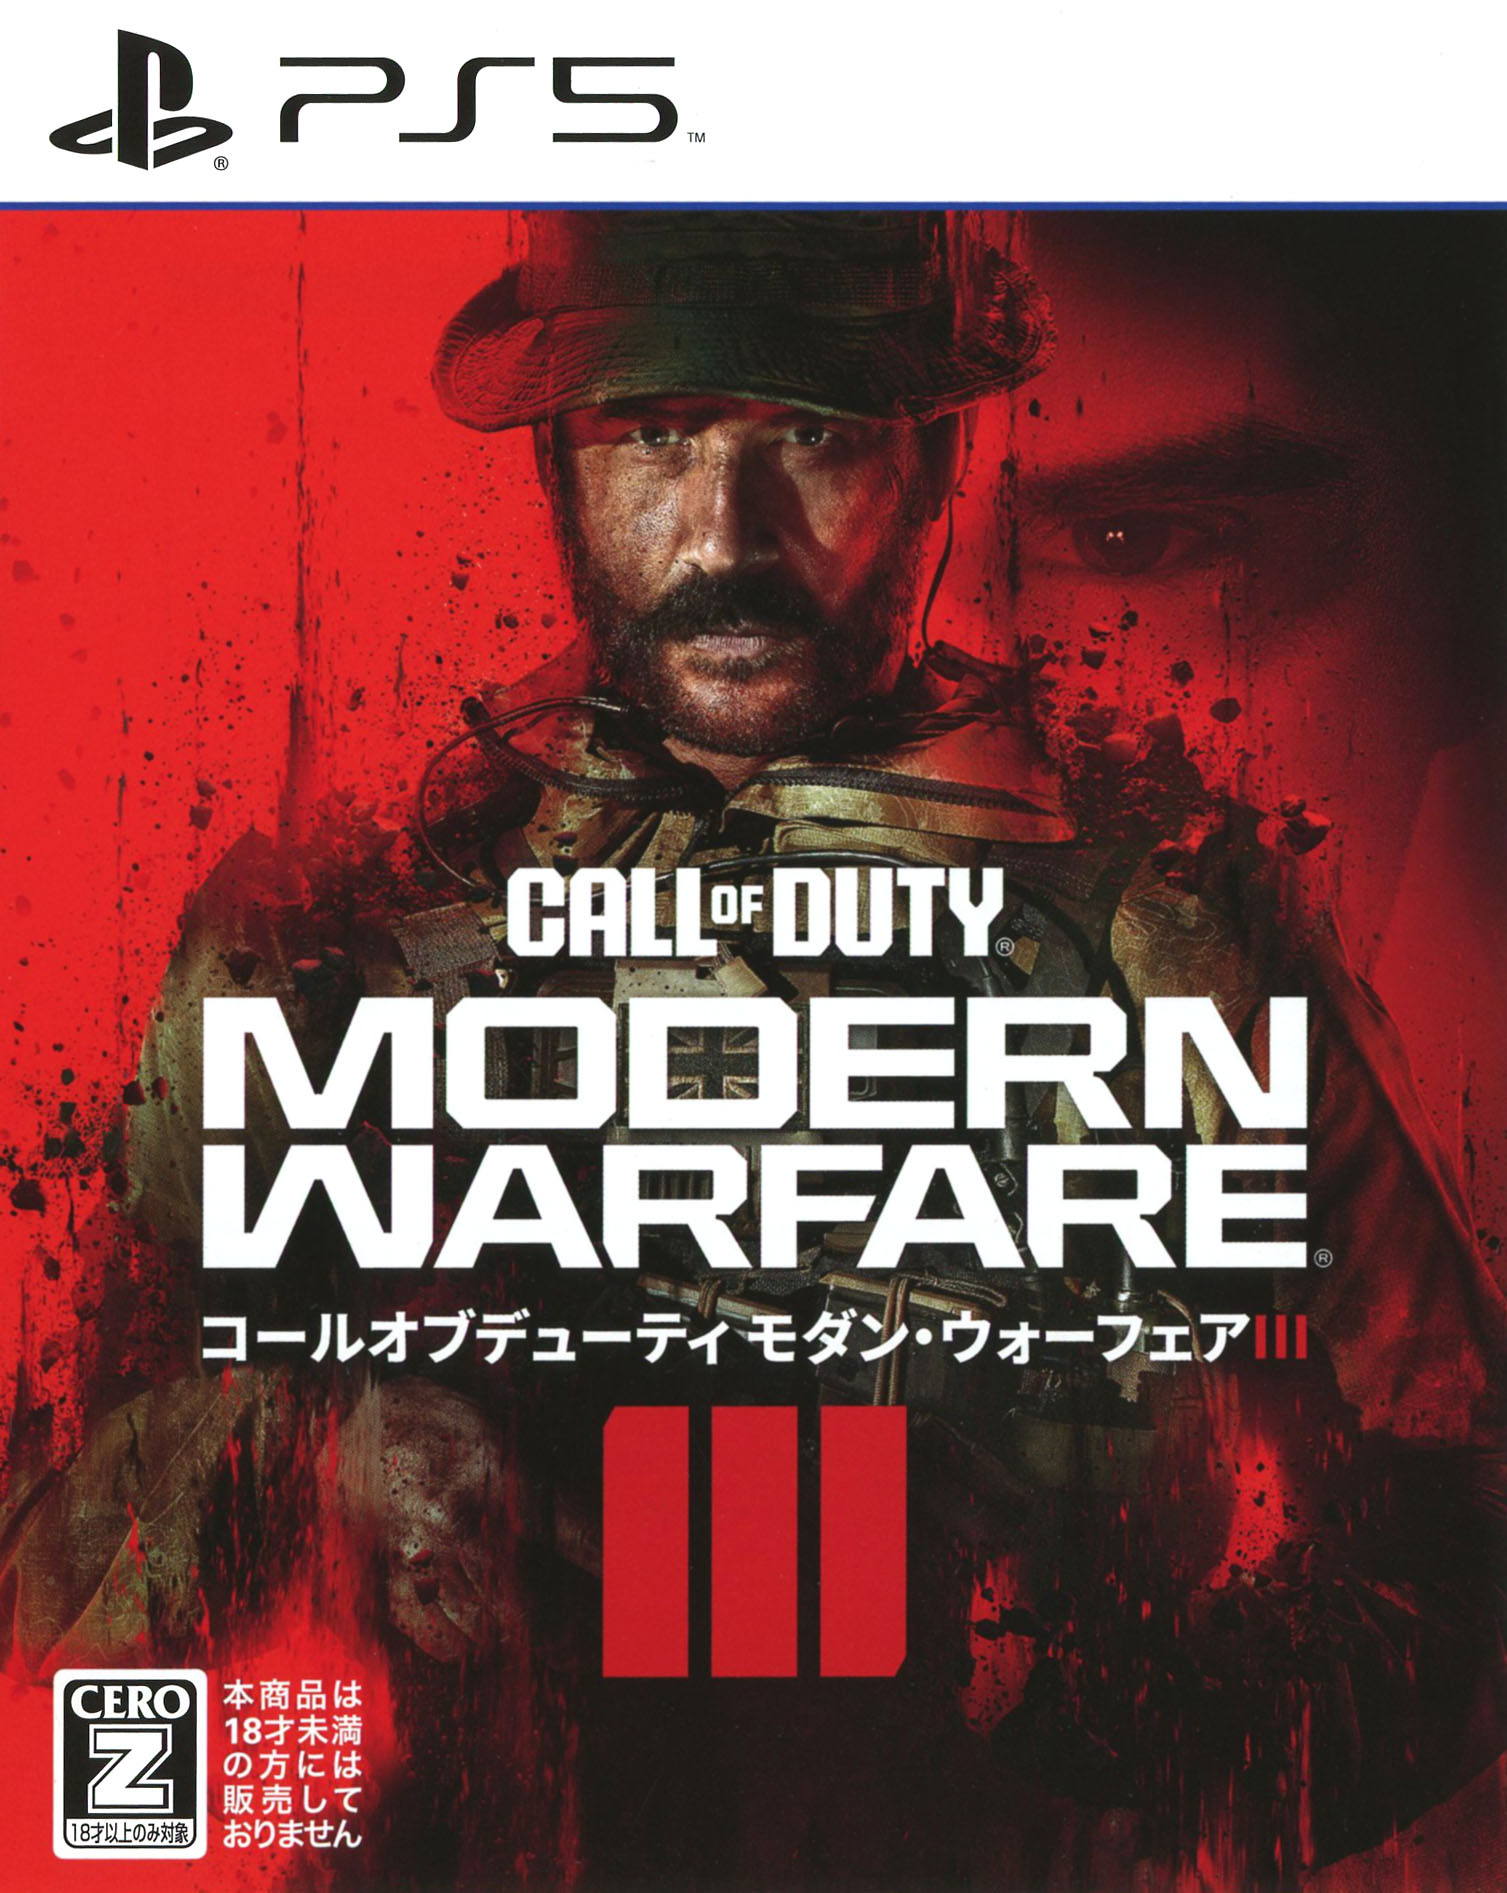 タイトル Call　of　Duty　Modern　Warfare　III &nbsp; コールオブデューティモダンウォーフェアスリー ジャンル シューティング/ファーストパーソン 機種 プレイステーション5 発売日 2023/11/10発売 規格番号 ELIM-30361 JAN 5030917299964 宿敵との再会－戦いは最終局面へ。ジョン・ブライス大佐を筆頭とした「タスクフォース141」が最後の戦いへと赴く。本作ではシリーズで最も冷酷で悪名高い宿敵マカロフが帰還。ブライス大佐は「タスクフォース141」とともに対決を制し、世界を救うことができるのか、 ※中古商品の場合、商品名に「初回」や「限定」・「○○付き」（例　Tシャツ付き）等の記載がございましても、特典等は原則付属しておりません。また、中古という特性上ダウンロードコード・プロダクトコードも保証の対象外です。コードが使用できない等の返品はお受けできません。ゲーム周辺機器の箱・取扱説明書及び、ゲーム機本体のプリインストールソフト、同梱されているダウンロードコードは初期化をしていますので、保証の対象外となっております。 尚、商品画像はイメージです。 ※2点以上お買い求めのお客様へ※ 当サイトの商品は、ゲオの店舗と共有しております。 商品保有数の関係上、異なる店舗から発送になる場合があり、お届けの荷物が複数にわかれたり、到着日時が異なる可能性がございます。（お荷物が複数になっても、送料・代引き手数料が重複する事はございません） 尚、複数にわけて発送した場合、お荷物にはその旨が記載されておりますので、お手数ですが、お荷物到着時にご確認いただけますよう、お願い申し上げます。 ※ご登録頂いた配送先住所内容の不備等により、弊社へ商品が返還された場合は自動的にキャンセル処理となりますので、配送先住所の登録の際には、お間違いのないよう、くれぐれもご注意お願い申し上げます。 ※商品の状態問合せに関しまして、弊社は複数の拠点で商品の管理を行っておりますので、お答えができません。 ※当サイトの在庫について 当サイトの商品は店舗と在庫共有をしており、注文の重複や、商品の事故等が原因により、ご注文頂いた後に、 キャンセルさせていただく場合がございます。 楽天ポイントの付与・買いまわり店舗数のカウント等につきましても、発送確定した商品のみの対象になりますので、キャンセルさせて頂いた商品につきましては、補償の対象外とさせていただきます。 ご了承の上ご注文下さい。 ※こちらは18歳以上対象商品です。 18歳以上の方は、購入前に上のチェックボックスにチェックお願いします。 保護者様へ